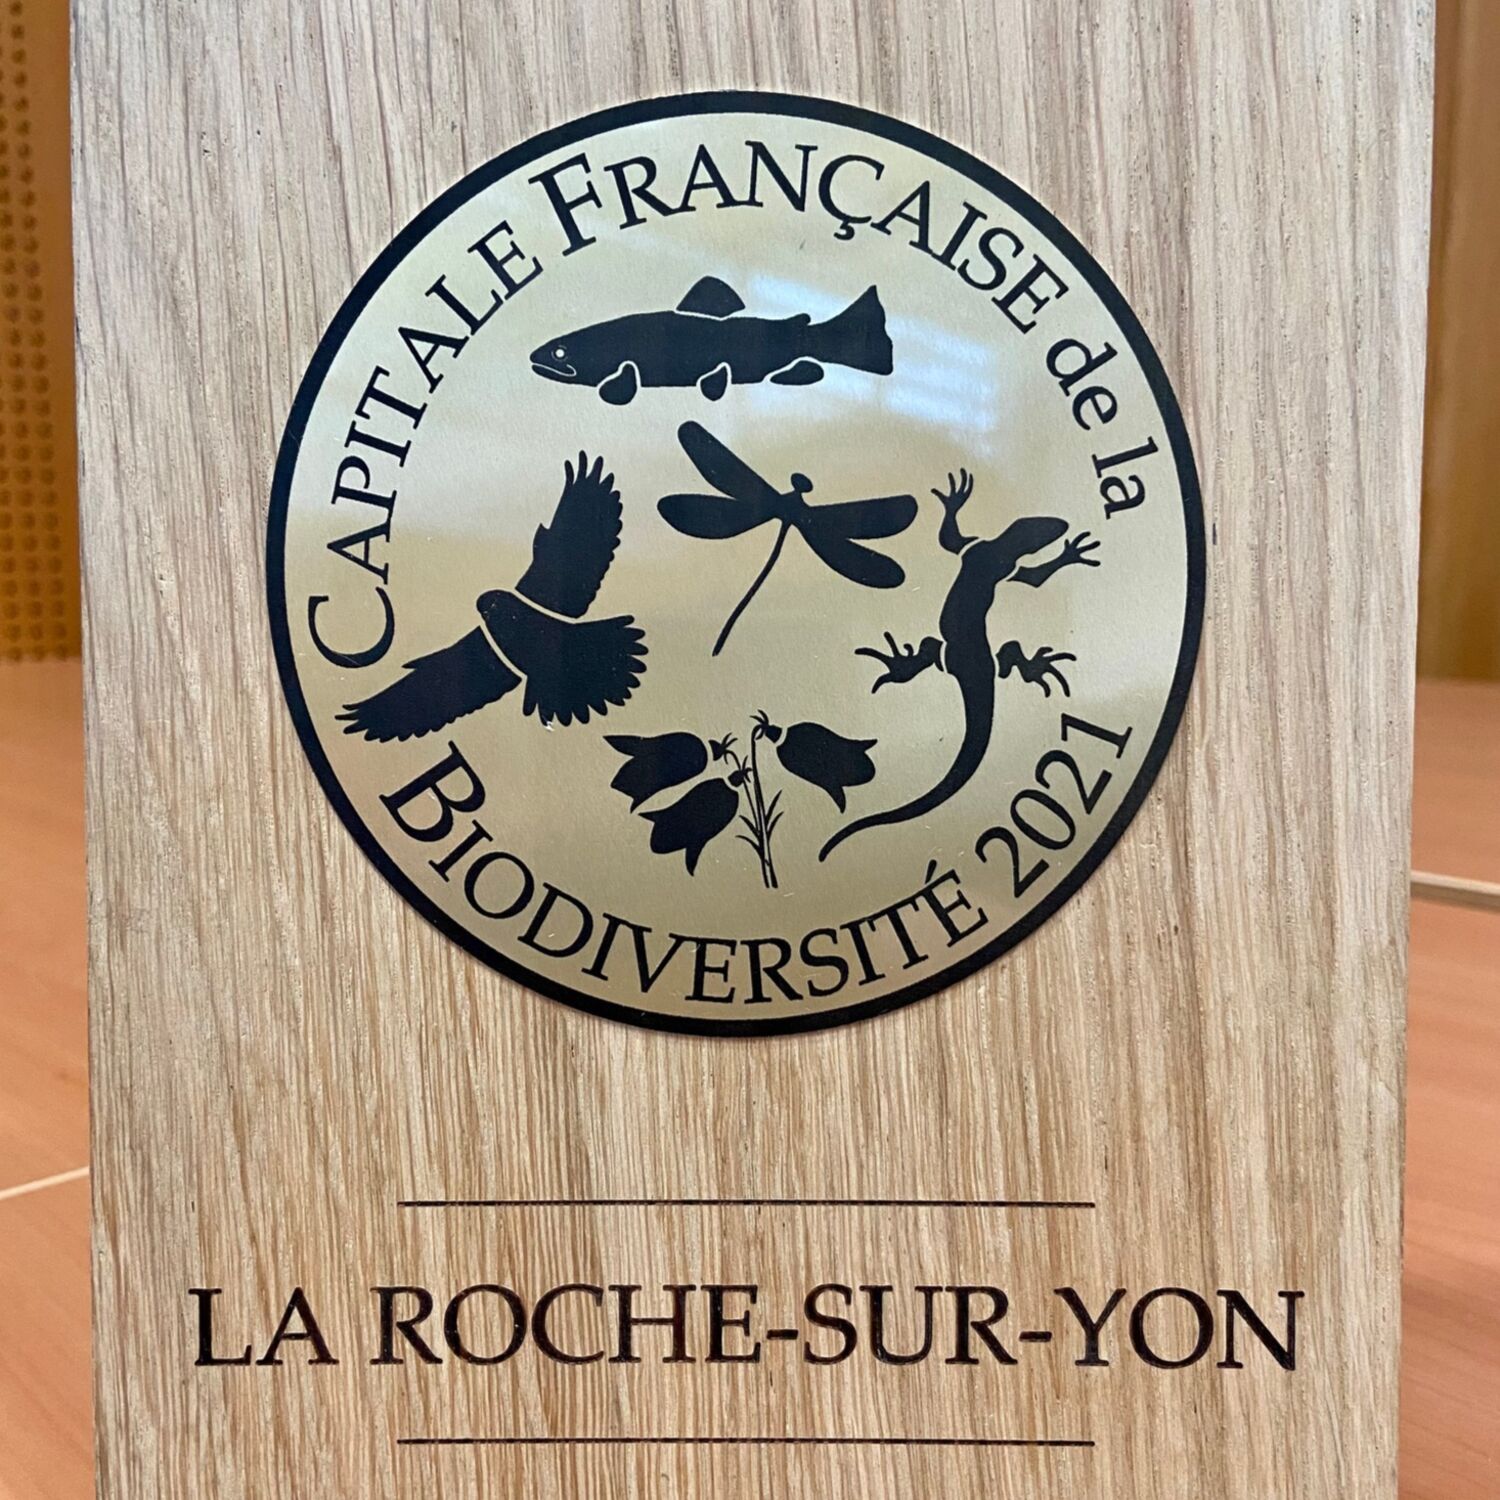 La Roche-sur-Yon devient la 10e Capitale française de la biodiversité